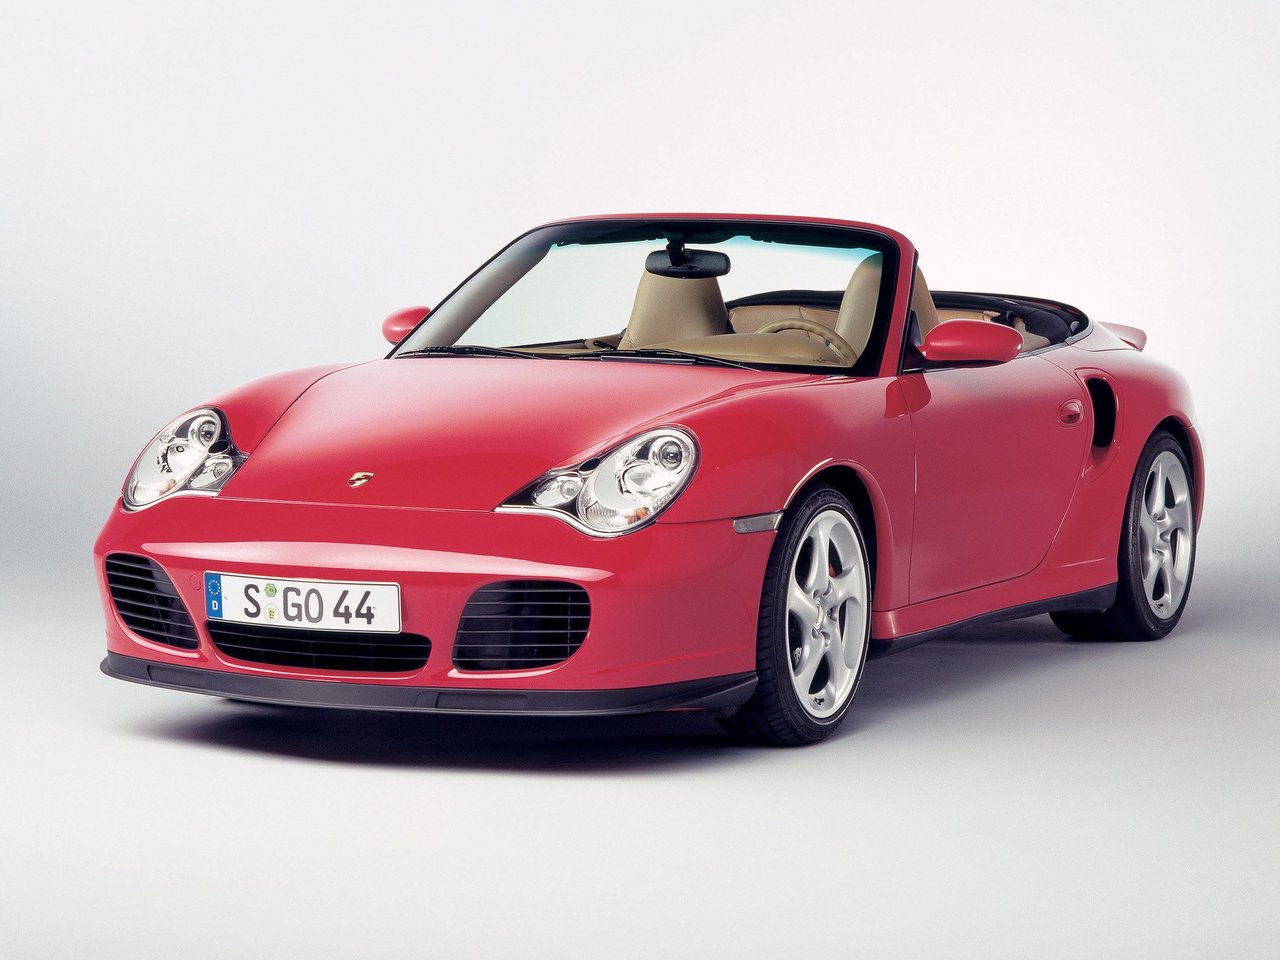 Расход газа четырёх комплектаций кабриолета Porsche 911. Разница стоимости заправки газом и бензином. Автономный пробег до и после установки ГБО.